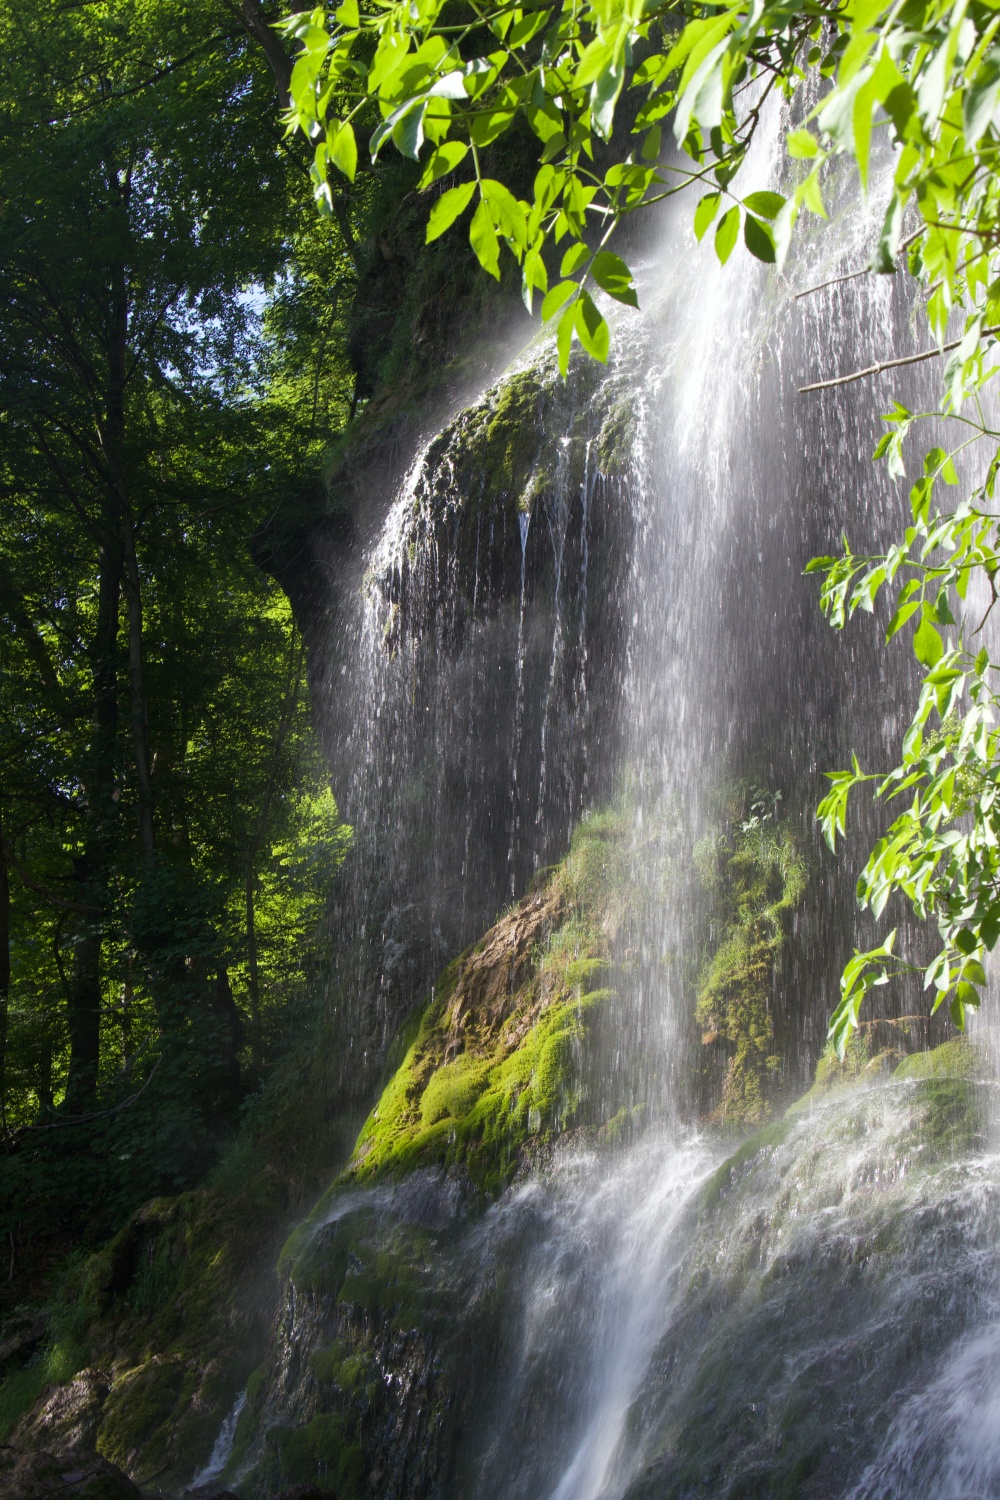 Solo wandern Wasserfallsteig Bad Urach Uracher Wasserfall